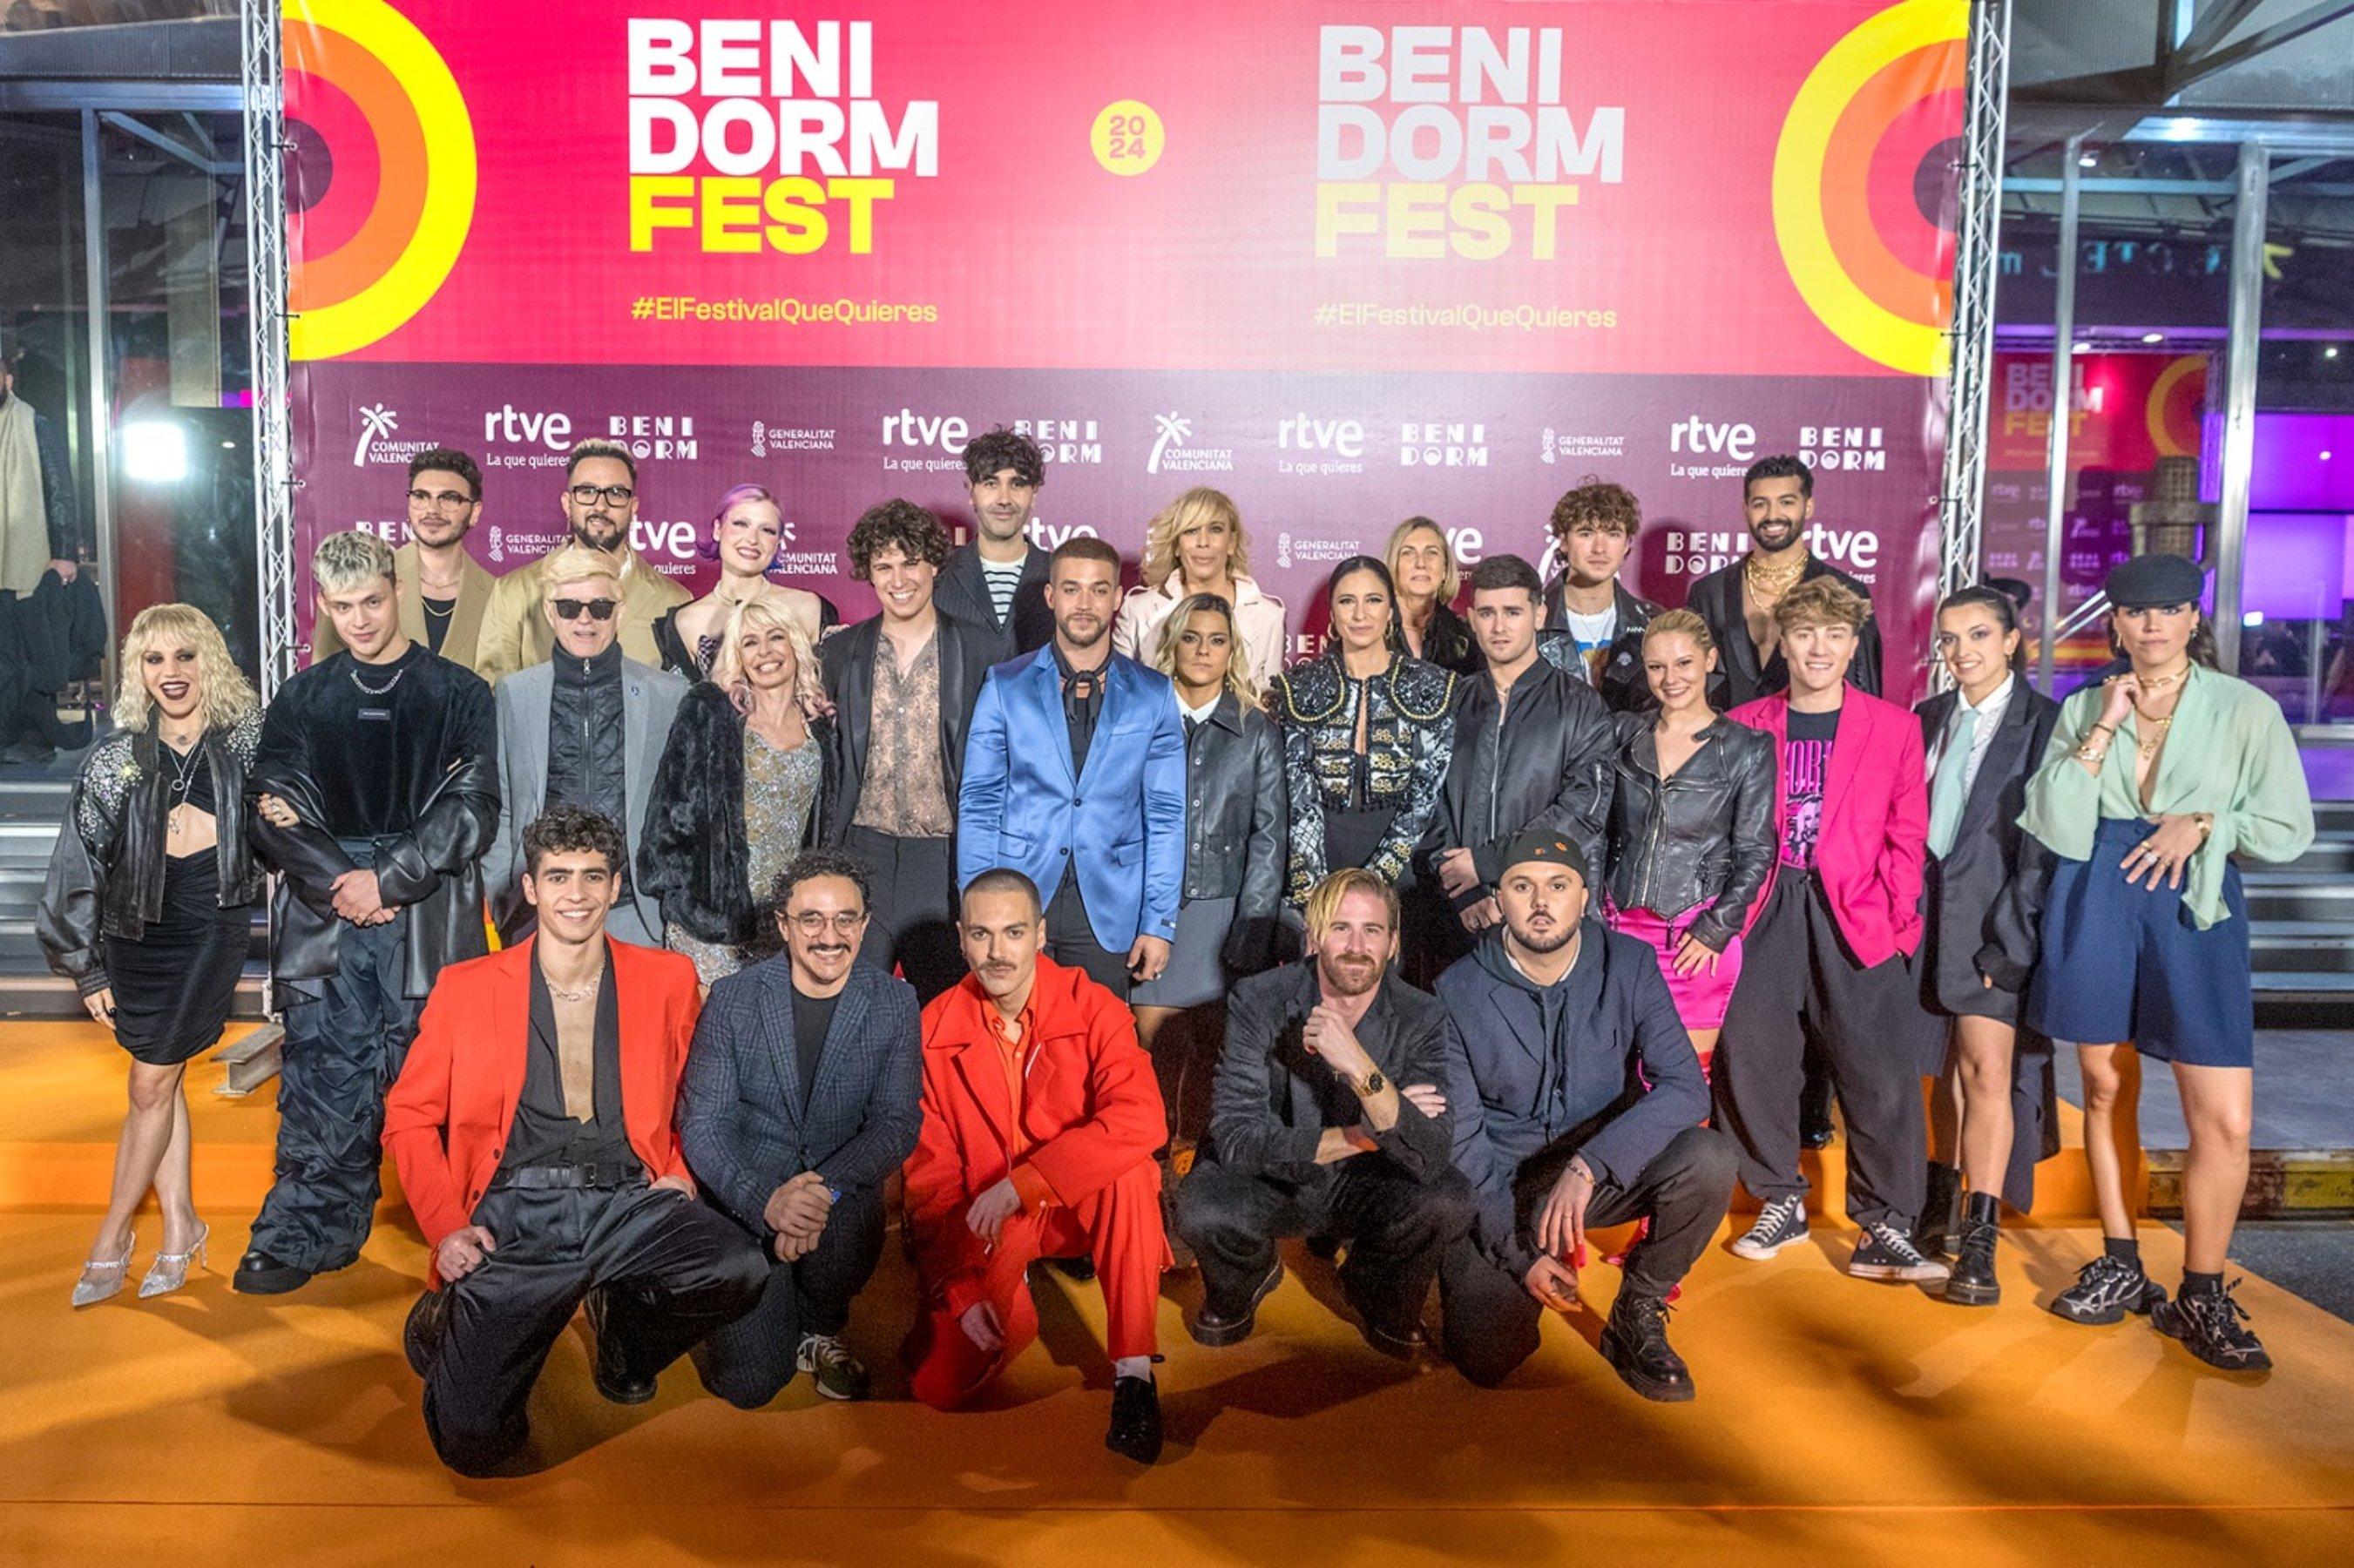 Arrenca el Benidorm Fest: un canvi de look radical i la pifia en directe d'un dels vestits més esperats